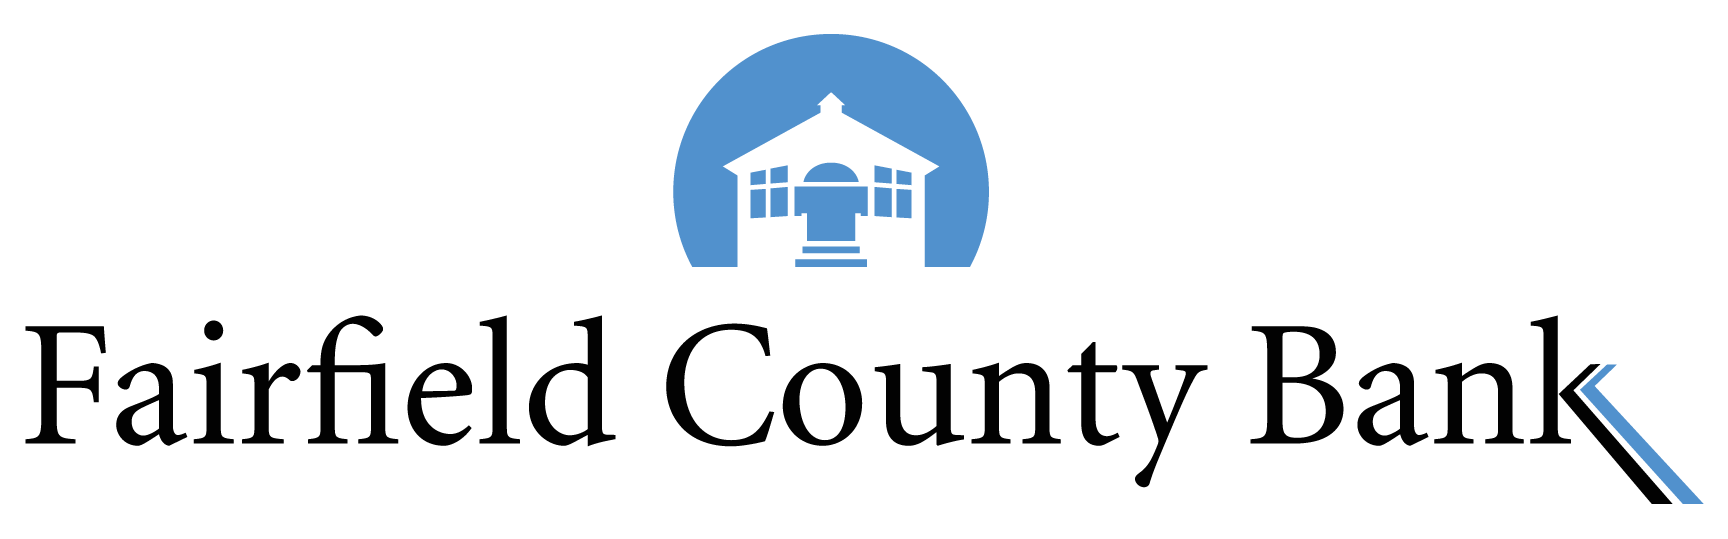 Fairfield County Bank Company Logo